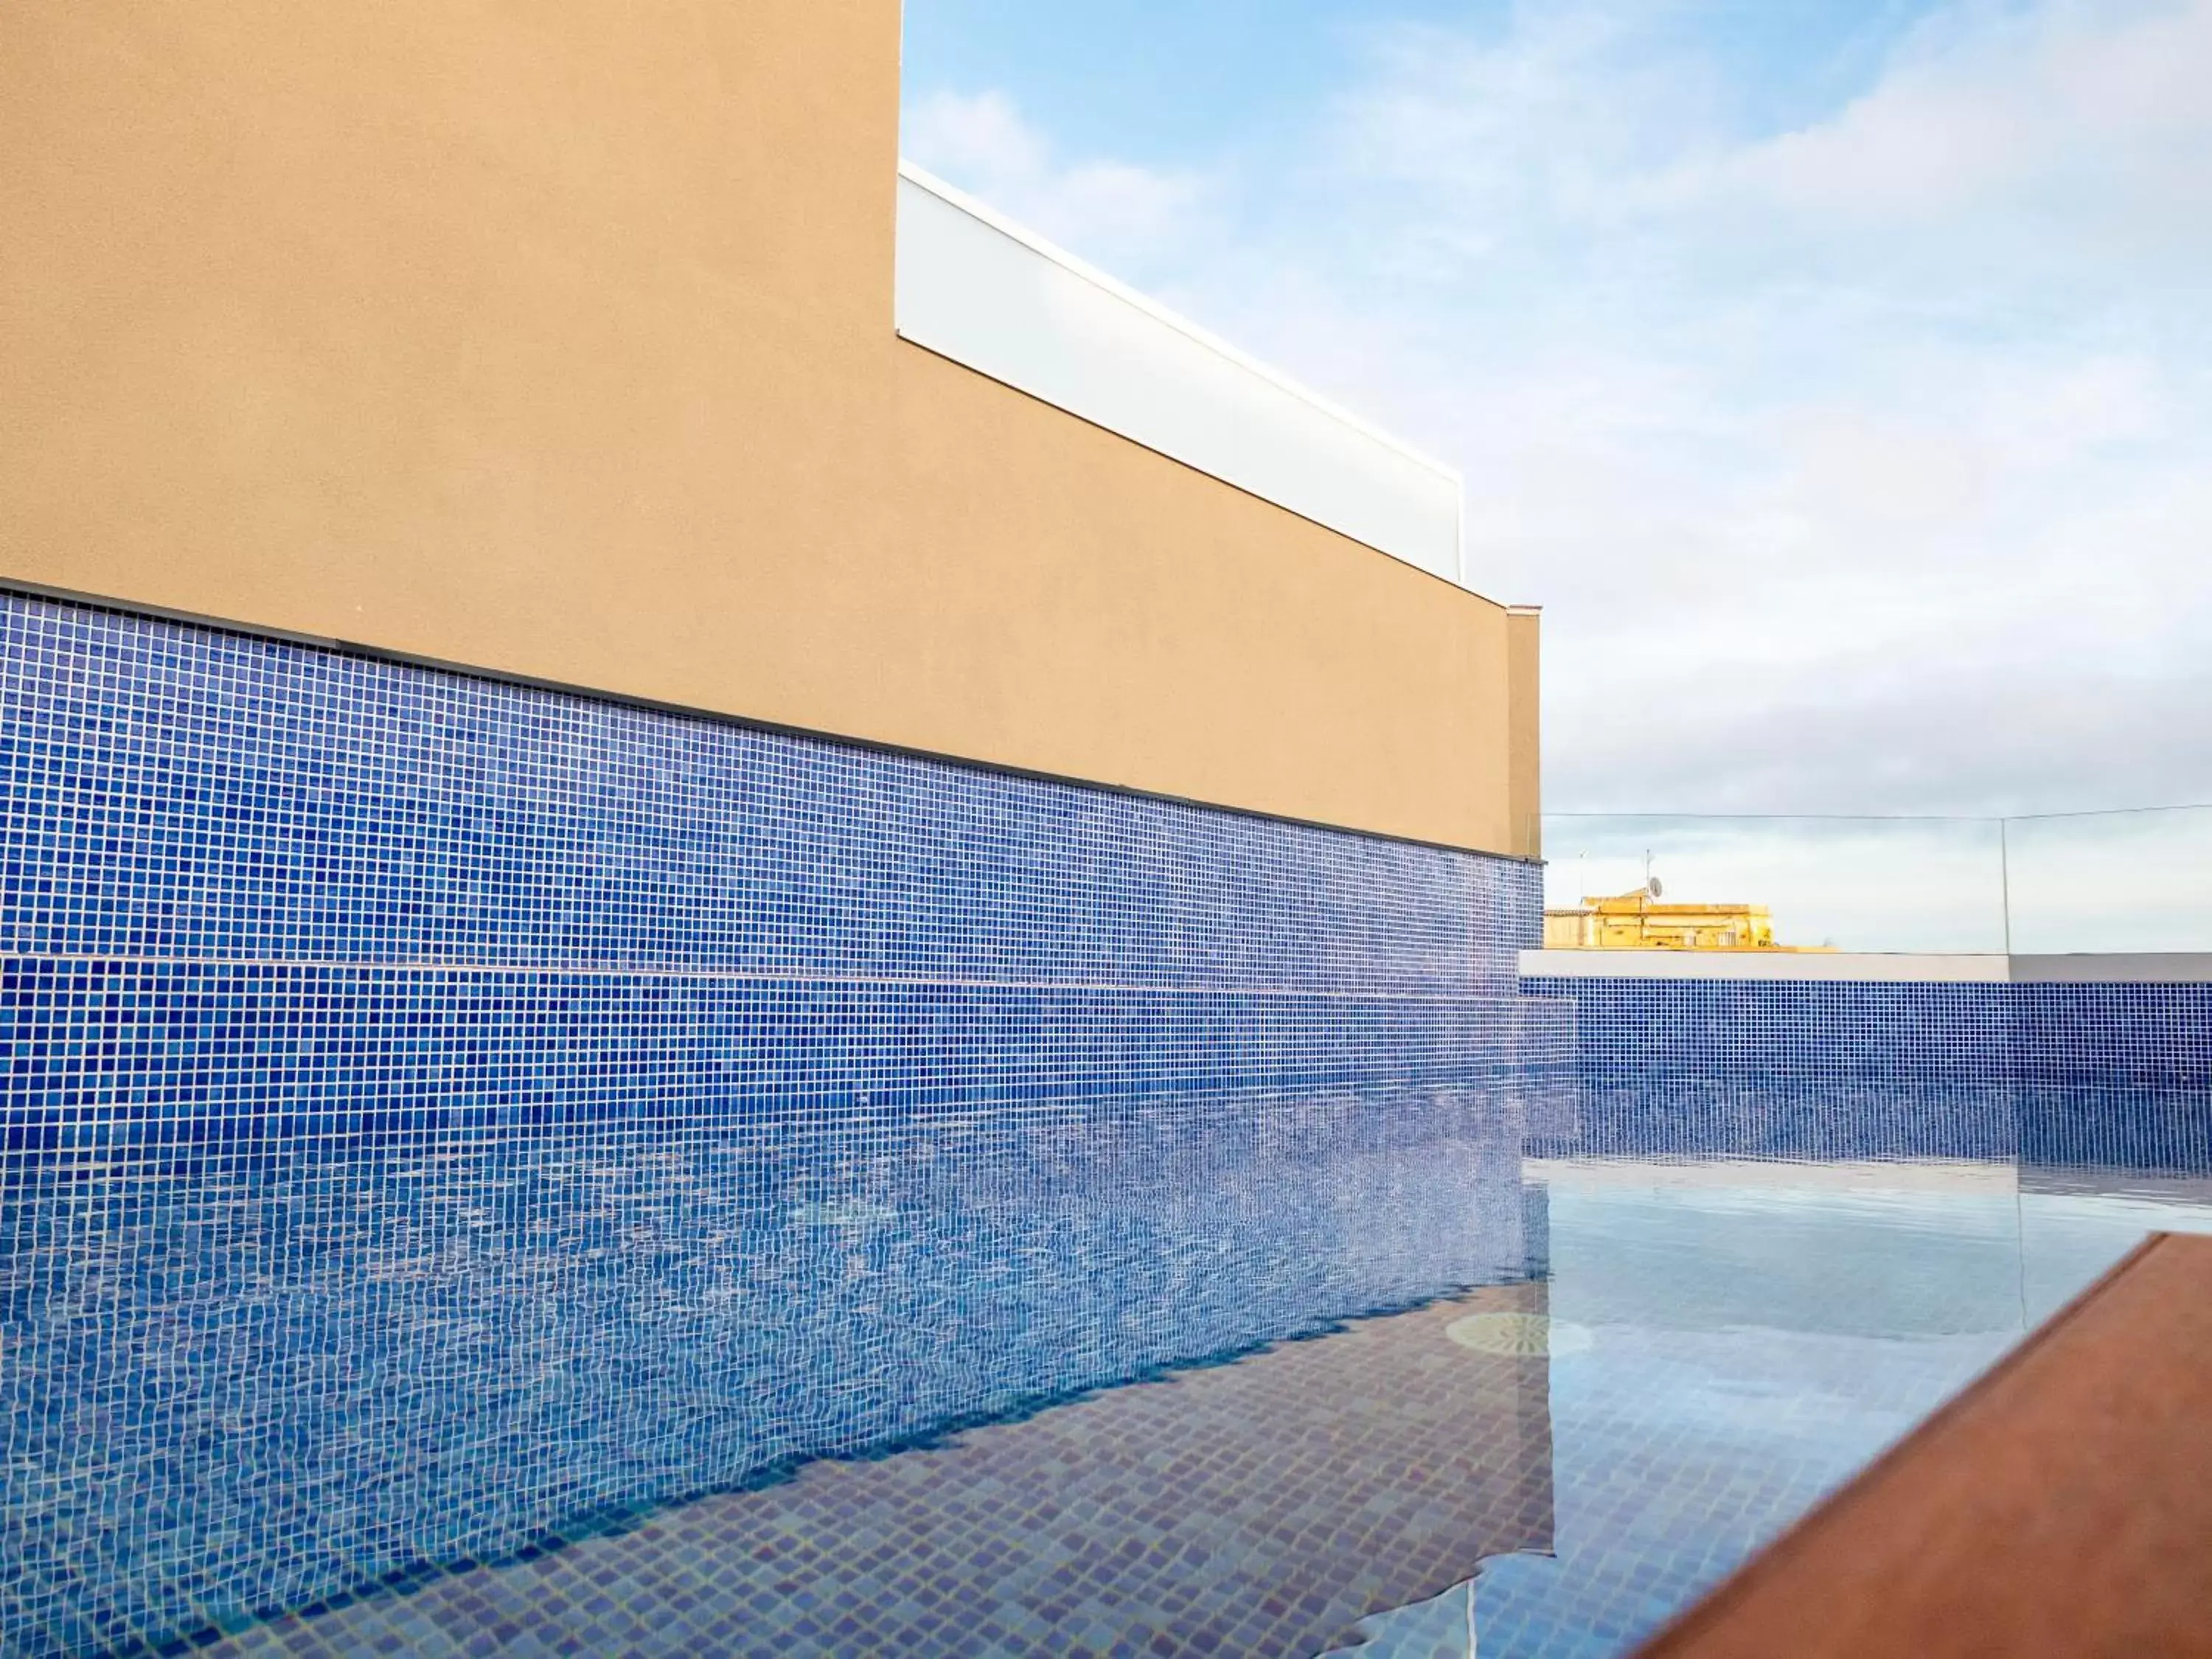 Solarium, Swimming Pool in Arcelon Hotel! New Opening! Nueva apertura 2023!